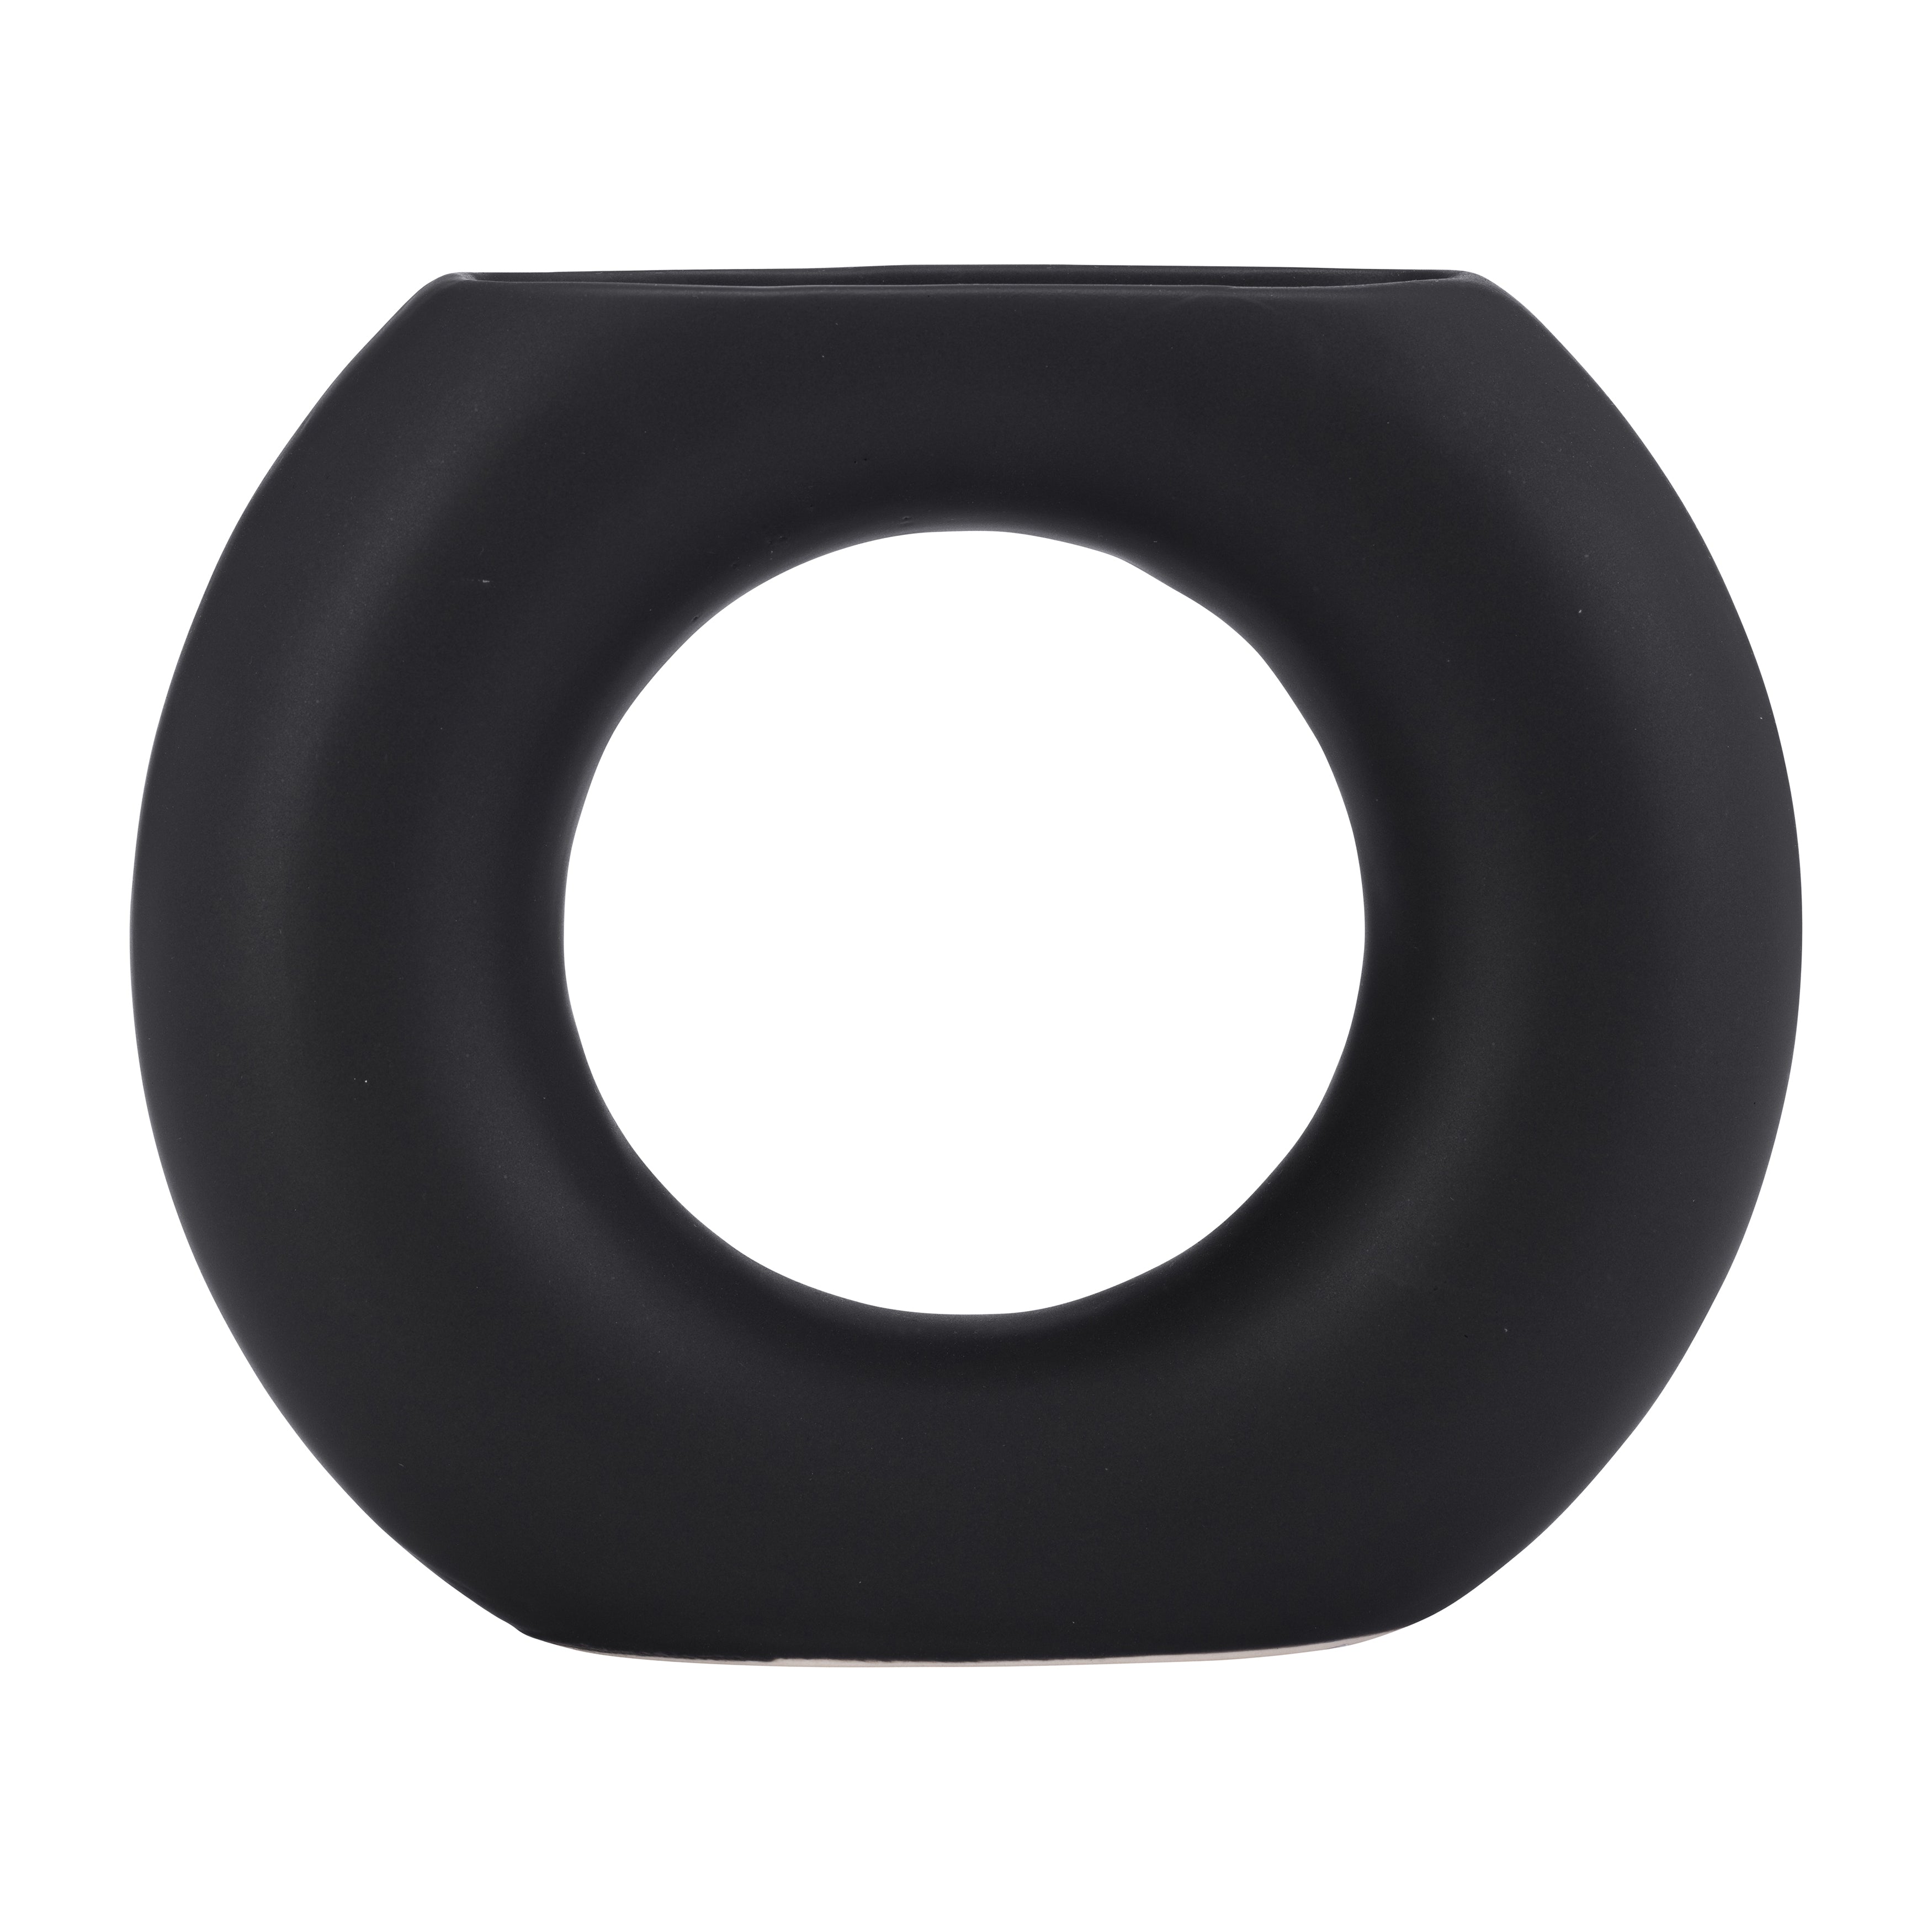 Black Donut Ceramic Vase, 5